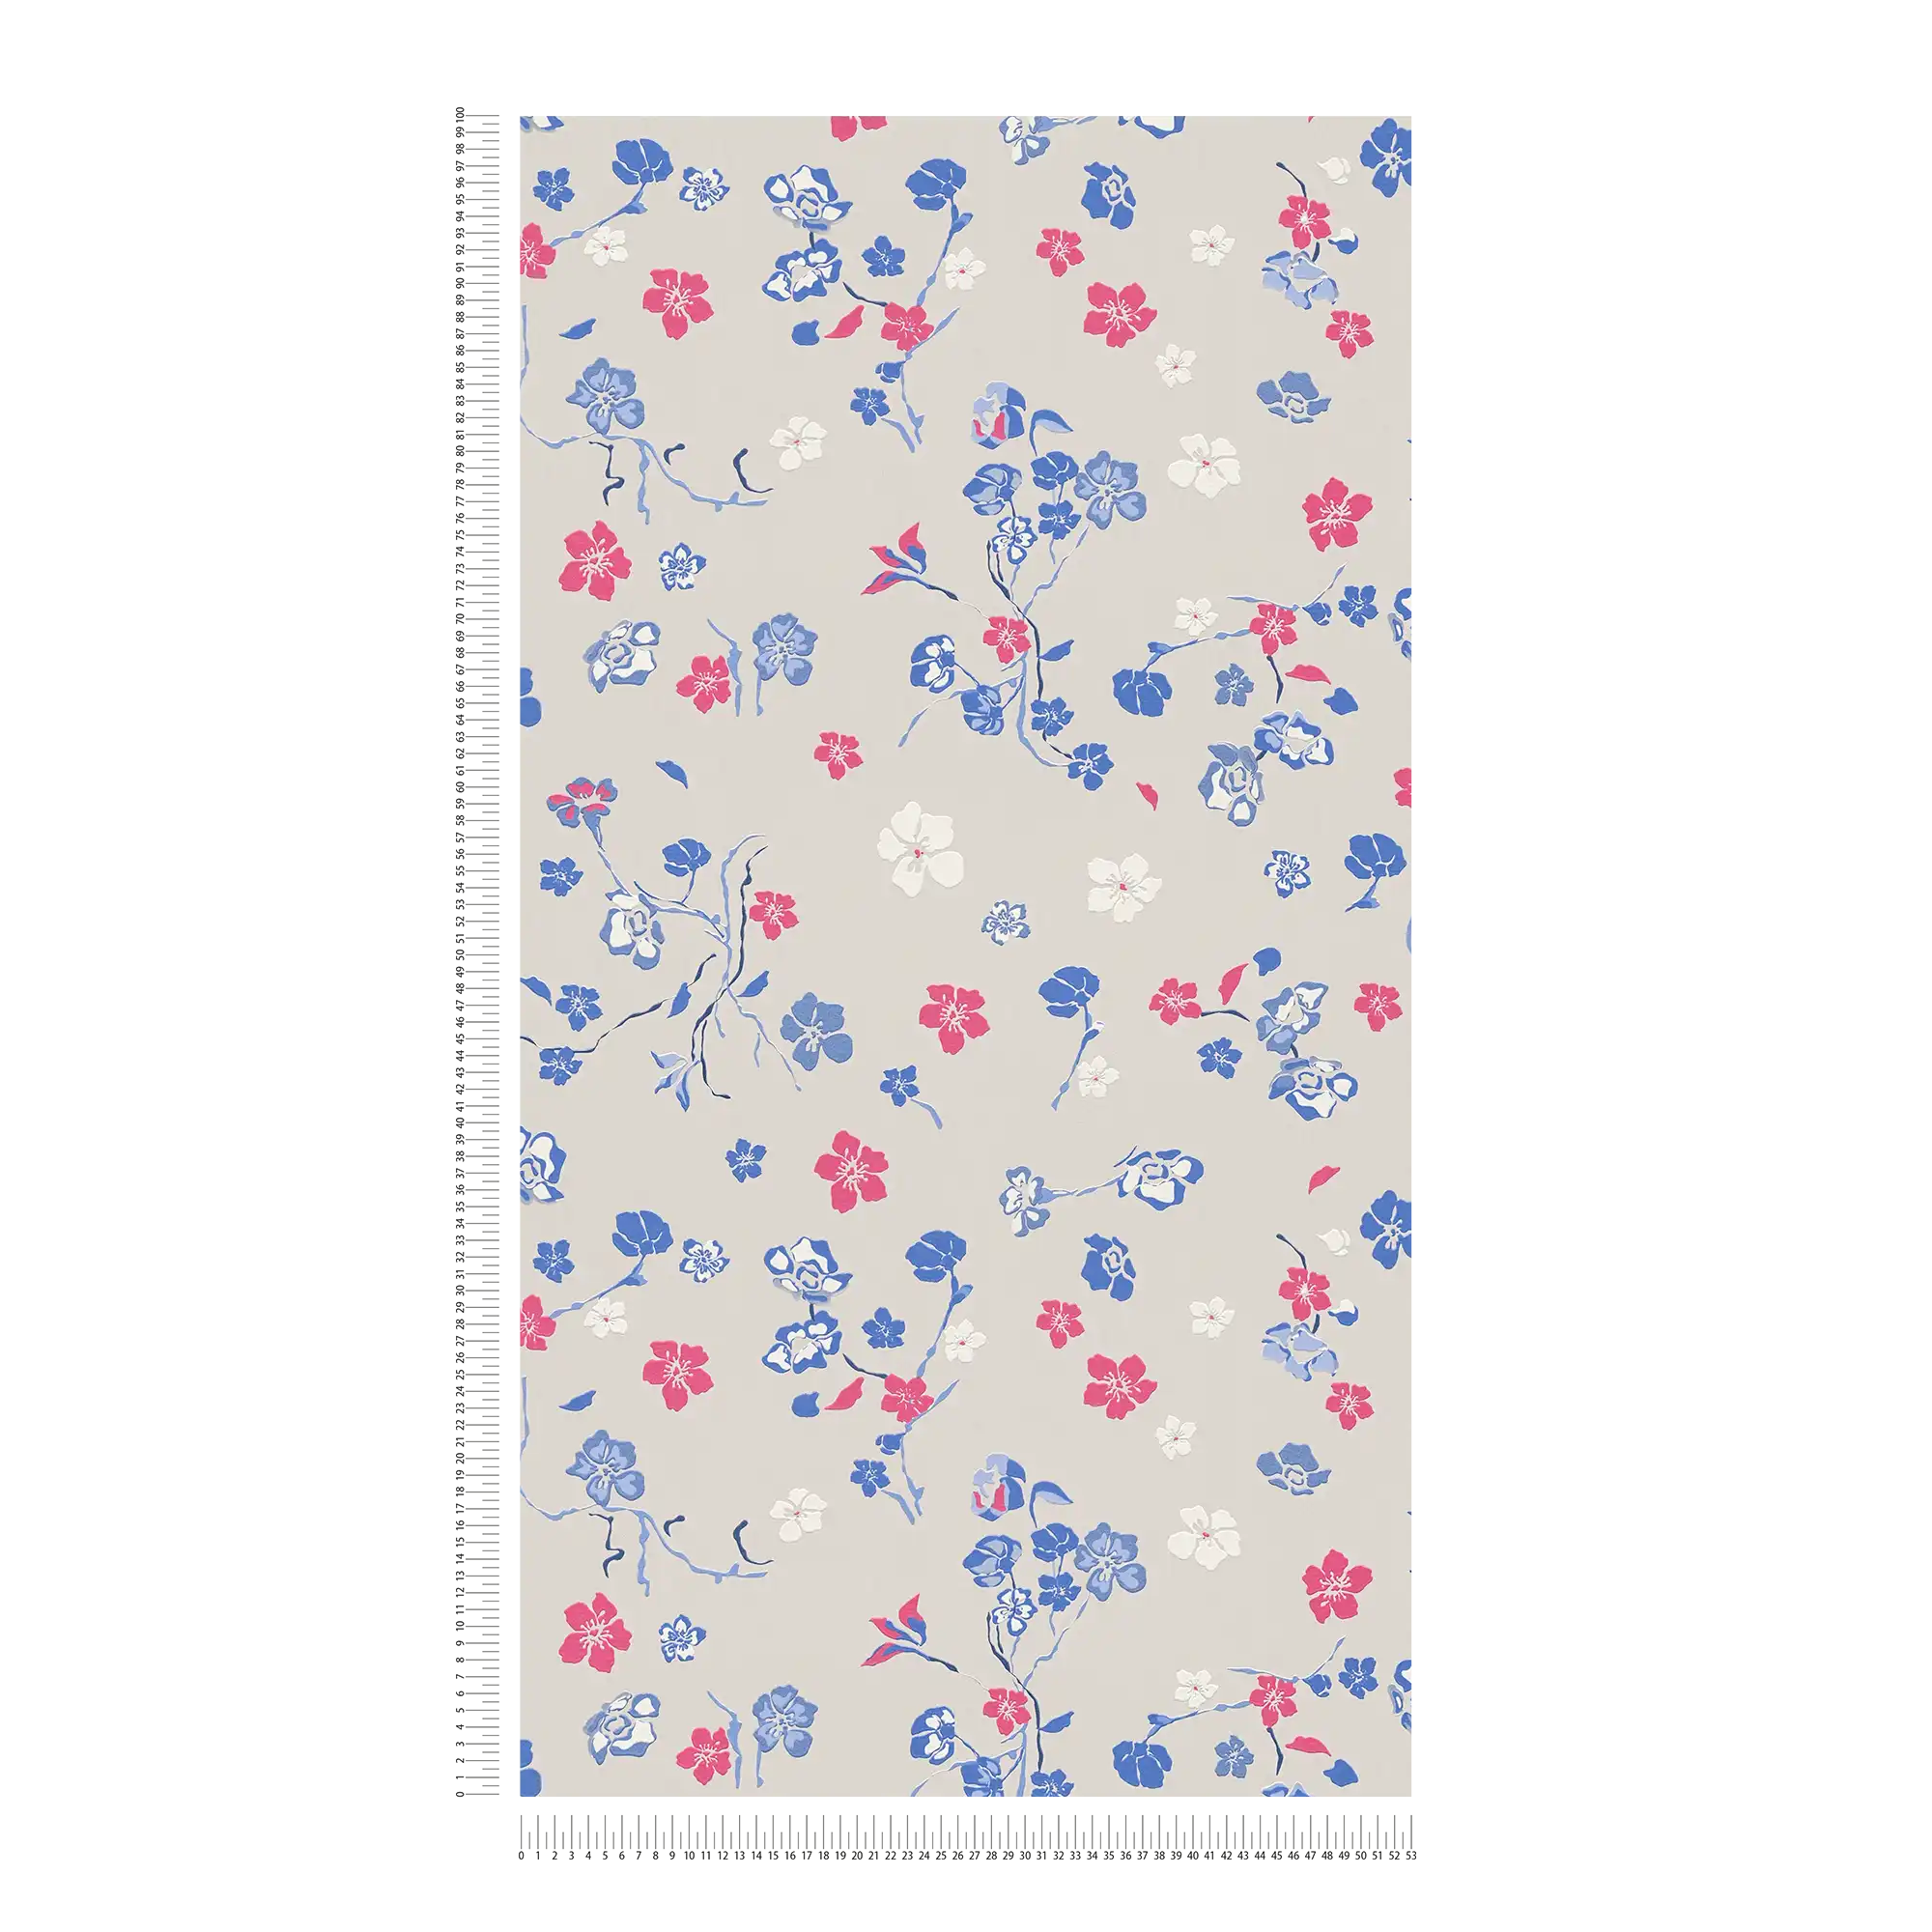             Carta da parati in tessuto non tessuto con motivo floreale giocoso - grigio chiaro, blu, rosa
        